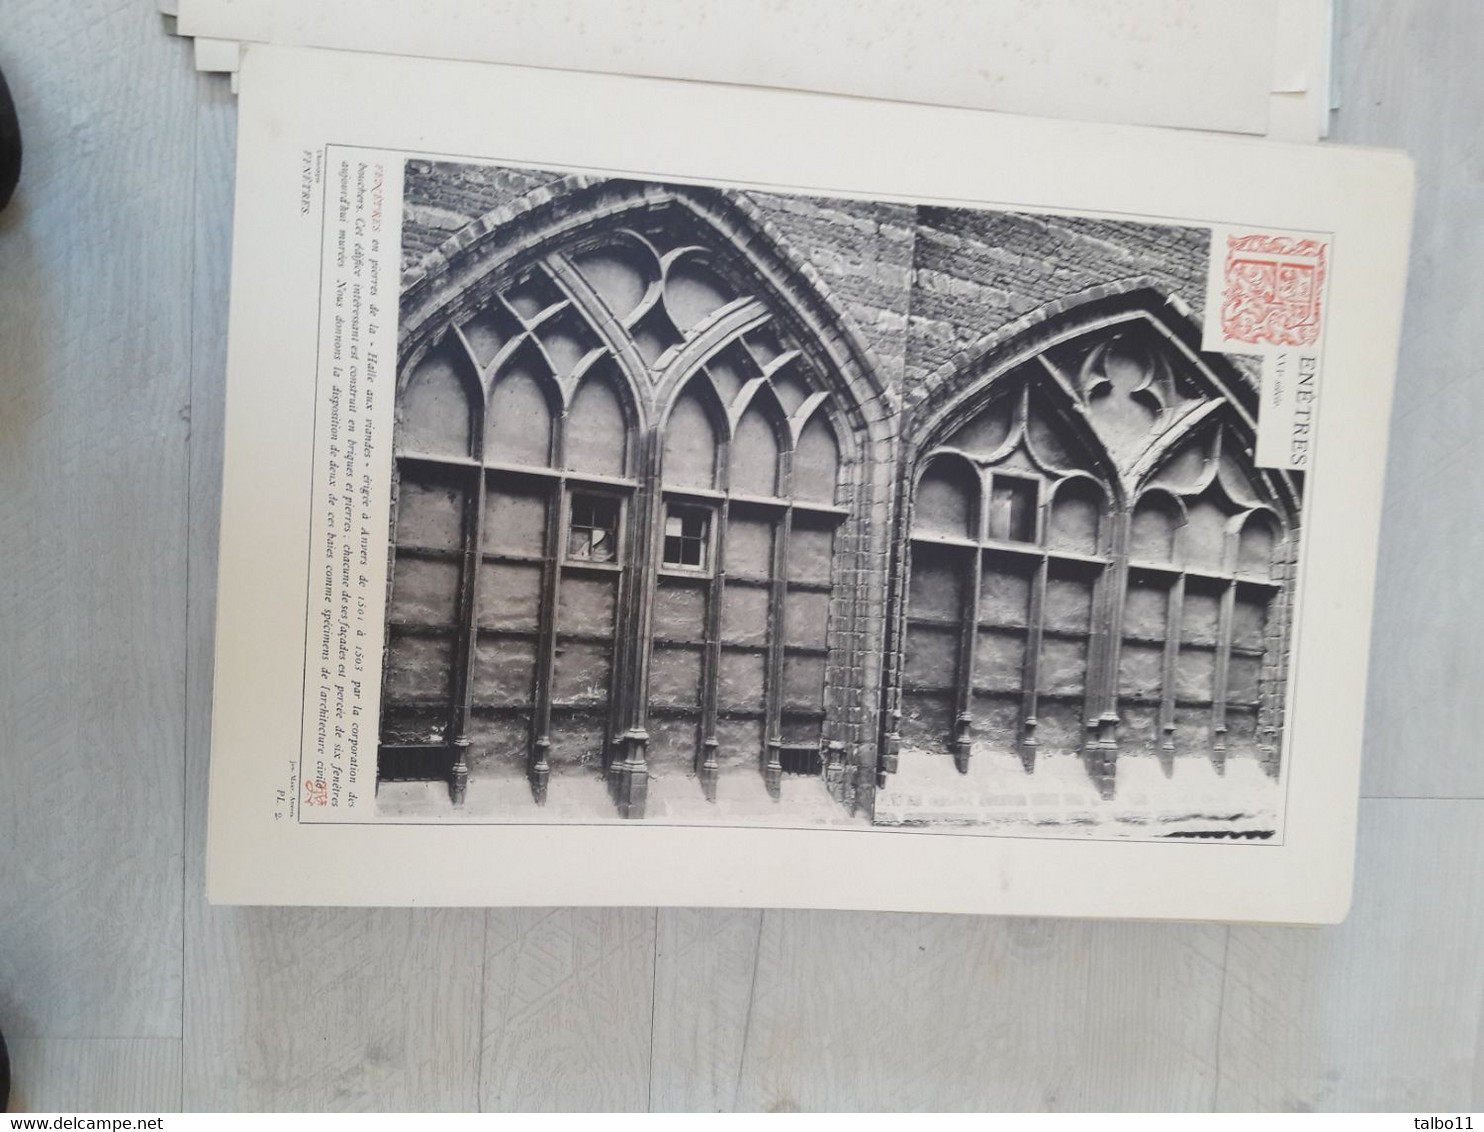 Vestiges de notre Art National - Société centrale d'architecture de Belgique - 1884  Van Ysendyck - Lot de 138 planches